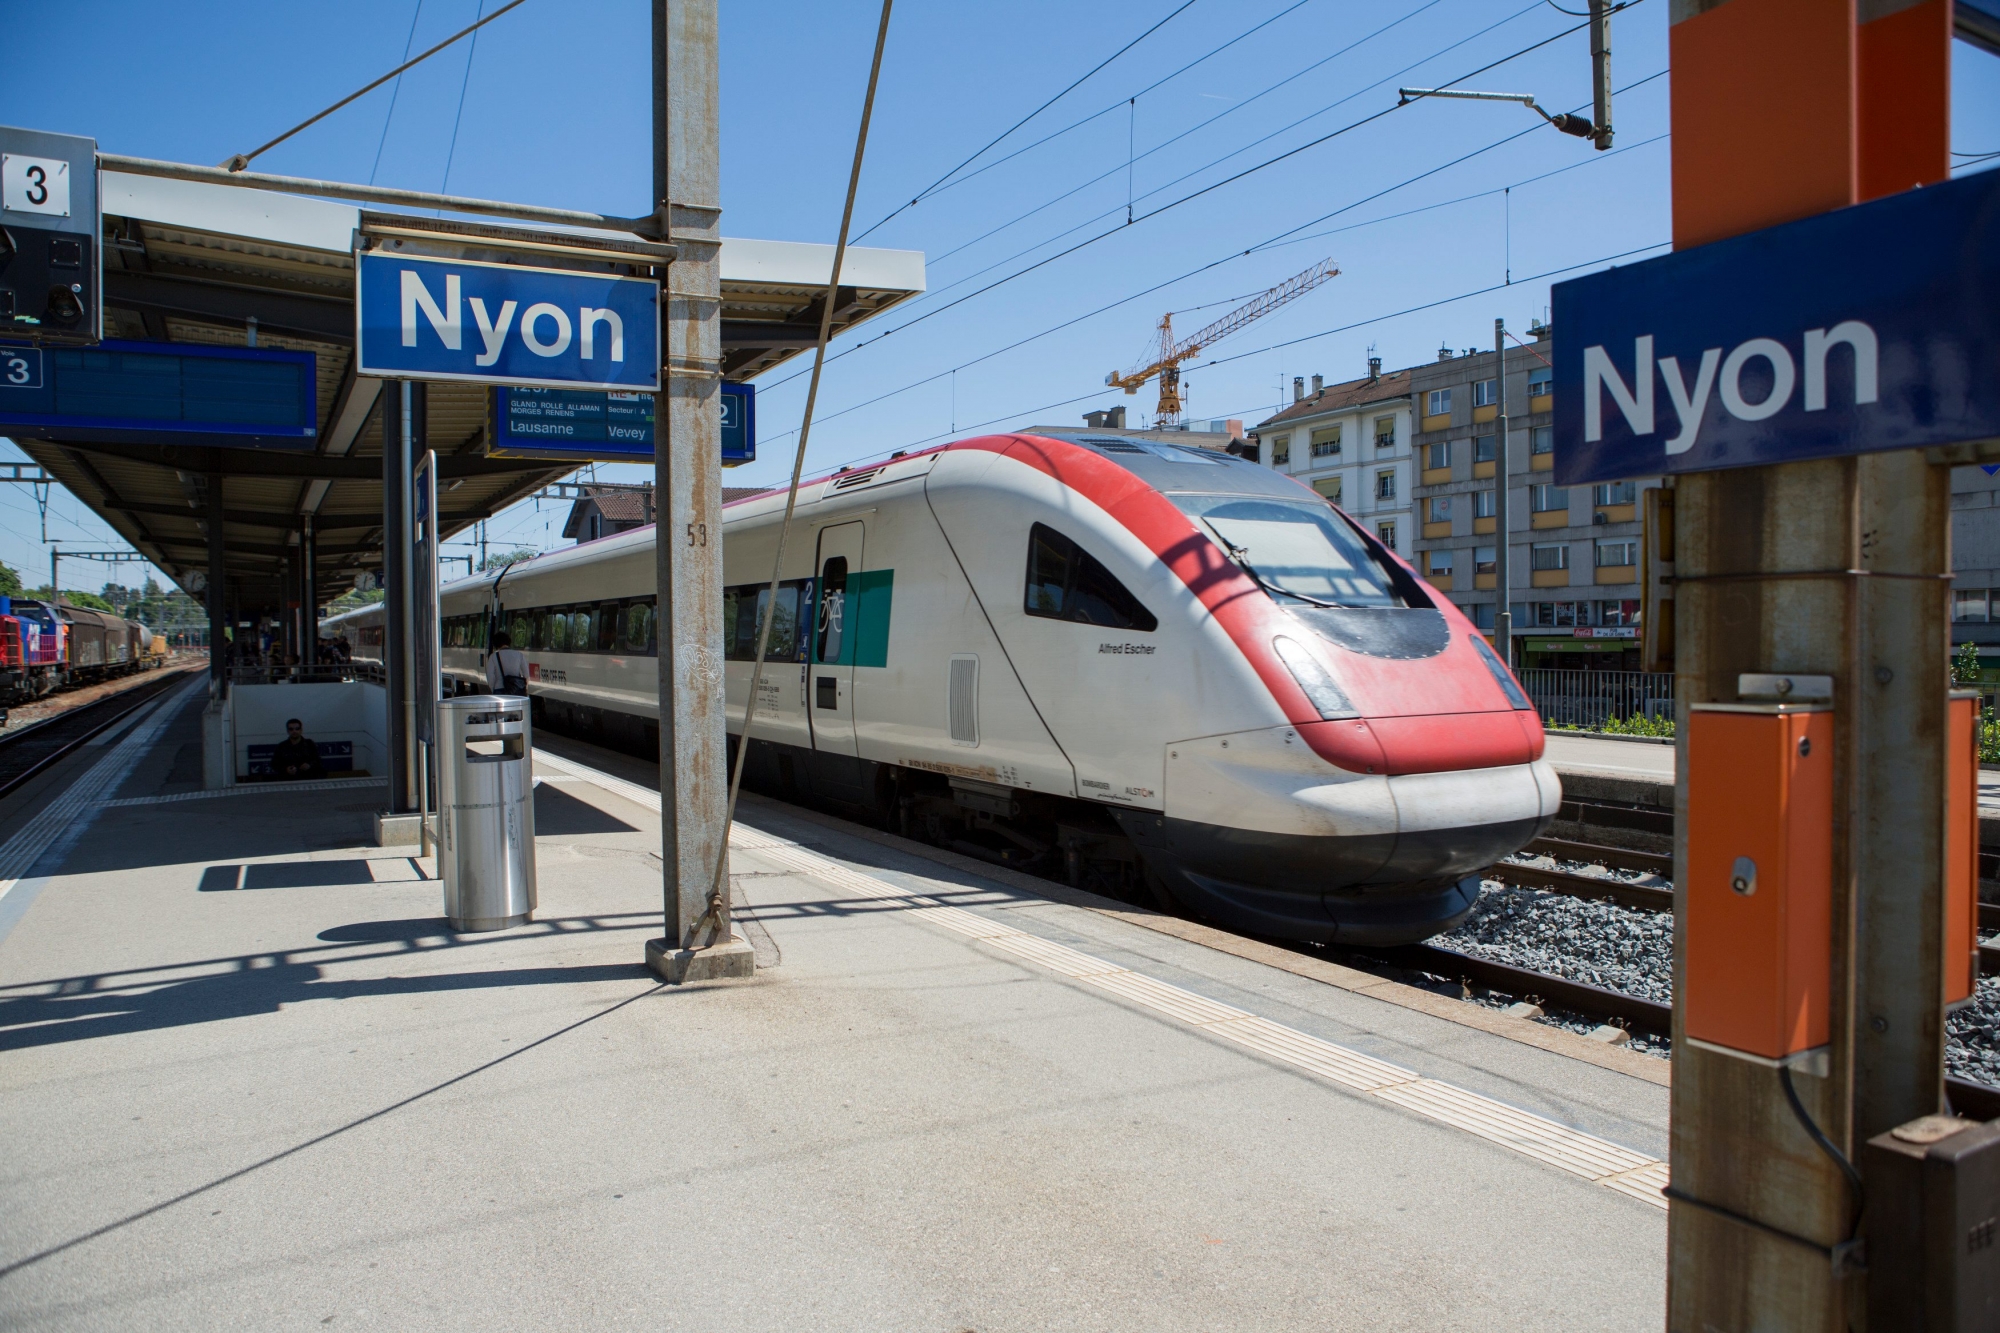 Nyon, mercredi 27 mai 2015
Train InterCity Neigezug (ICN) à la gare de Nyon

Sigfredo Haro Gare, Nyon